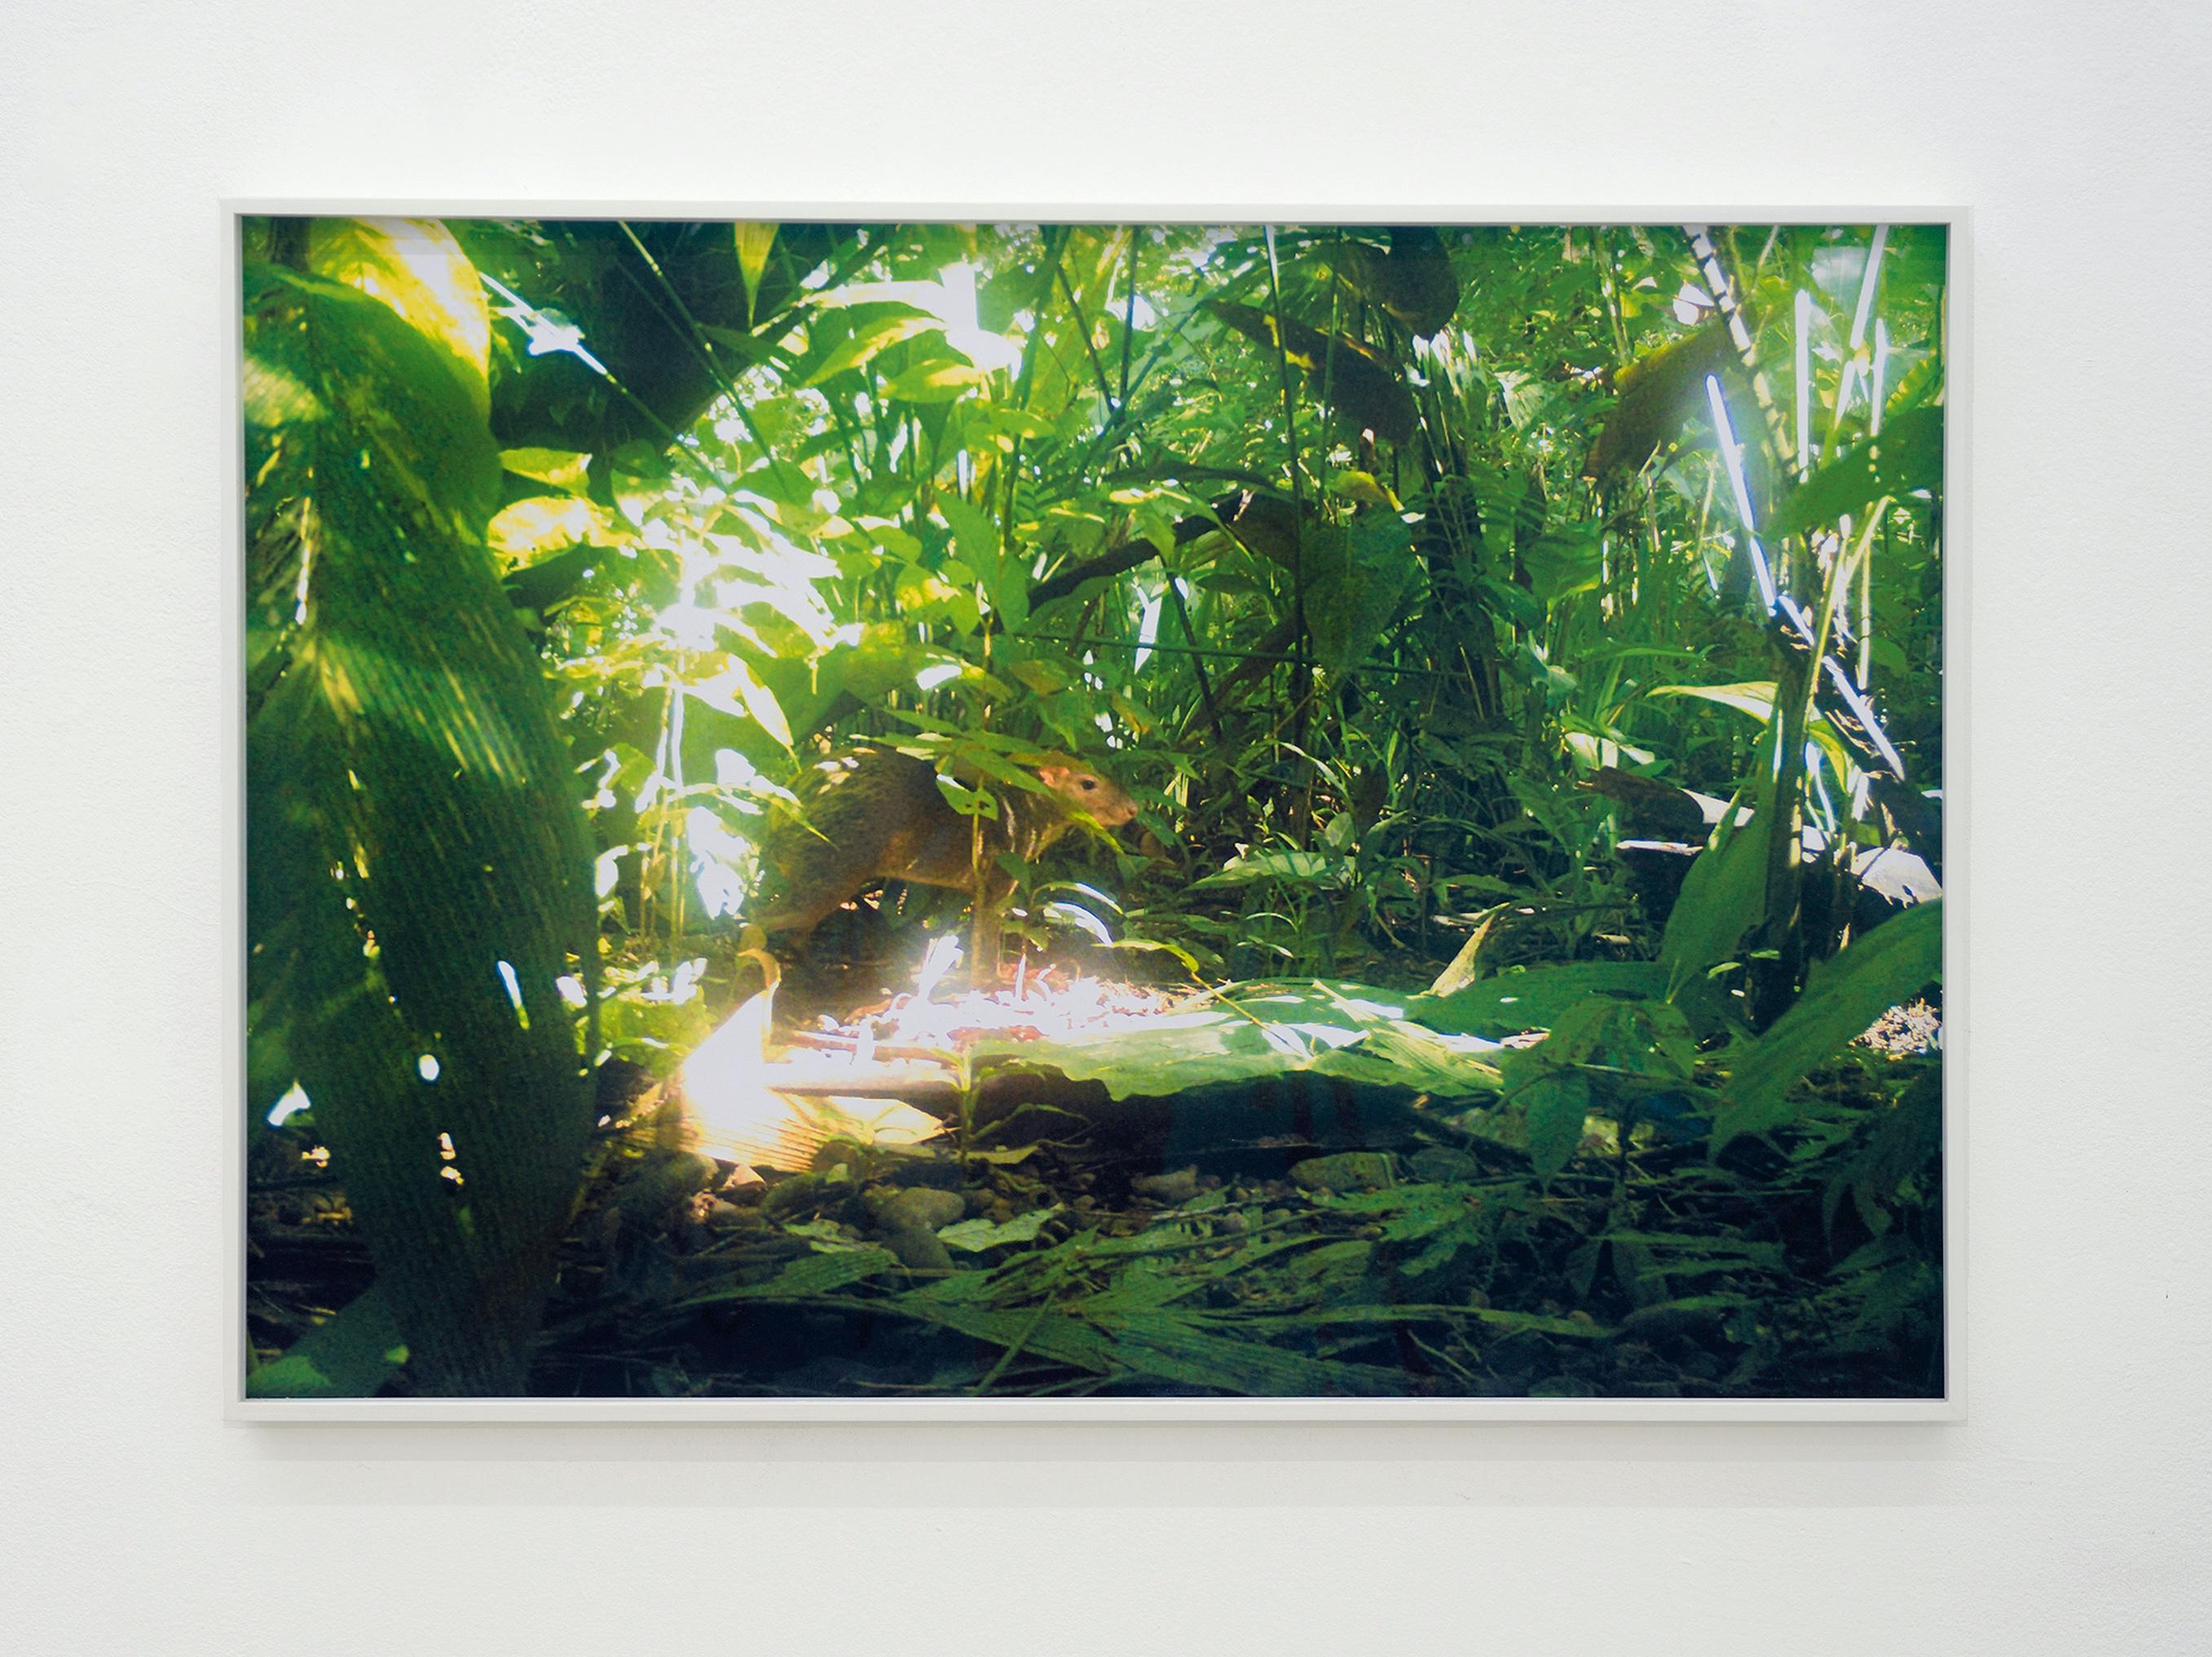 Tina Ribarits
Fotofalle (Aguti) Ed. 2/3 - Contemporary Color Landscape Jungle Photography
Ausgabe 2/3+2 AP
Der Druck ist ungerahmt und wird mit einem vom Künstler signierten Aufkleber geliefert.

Tina Ribarits arbeitet mit einem konzeptionellen